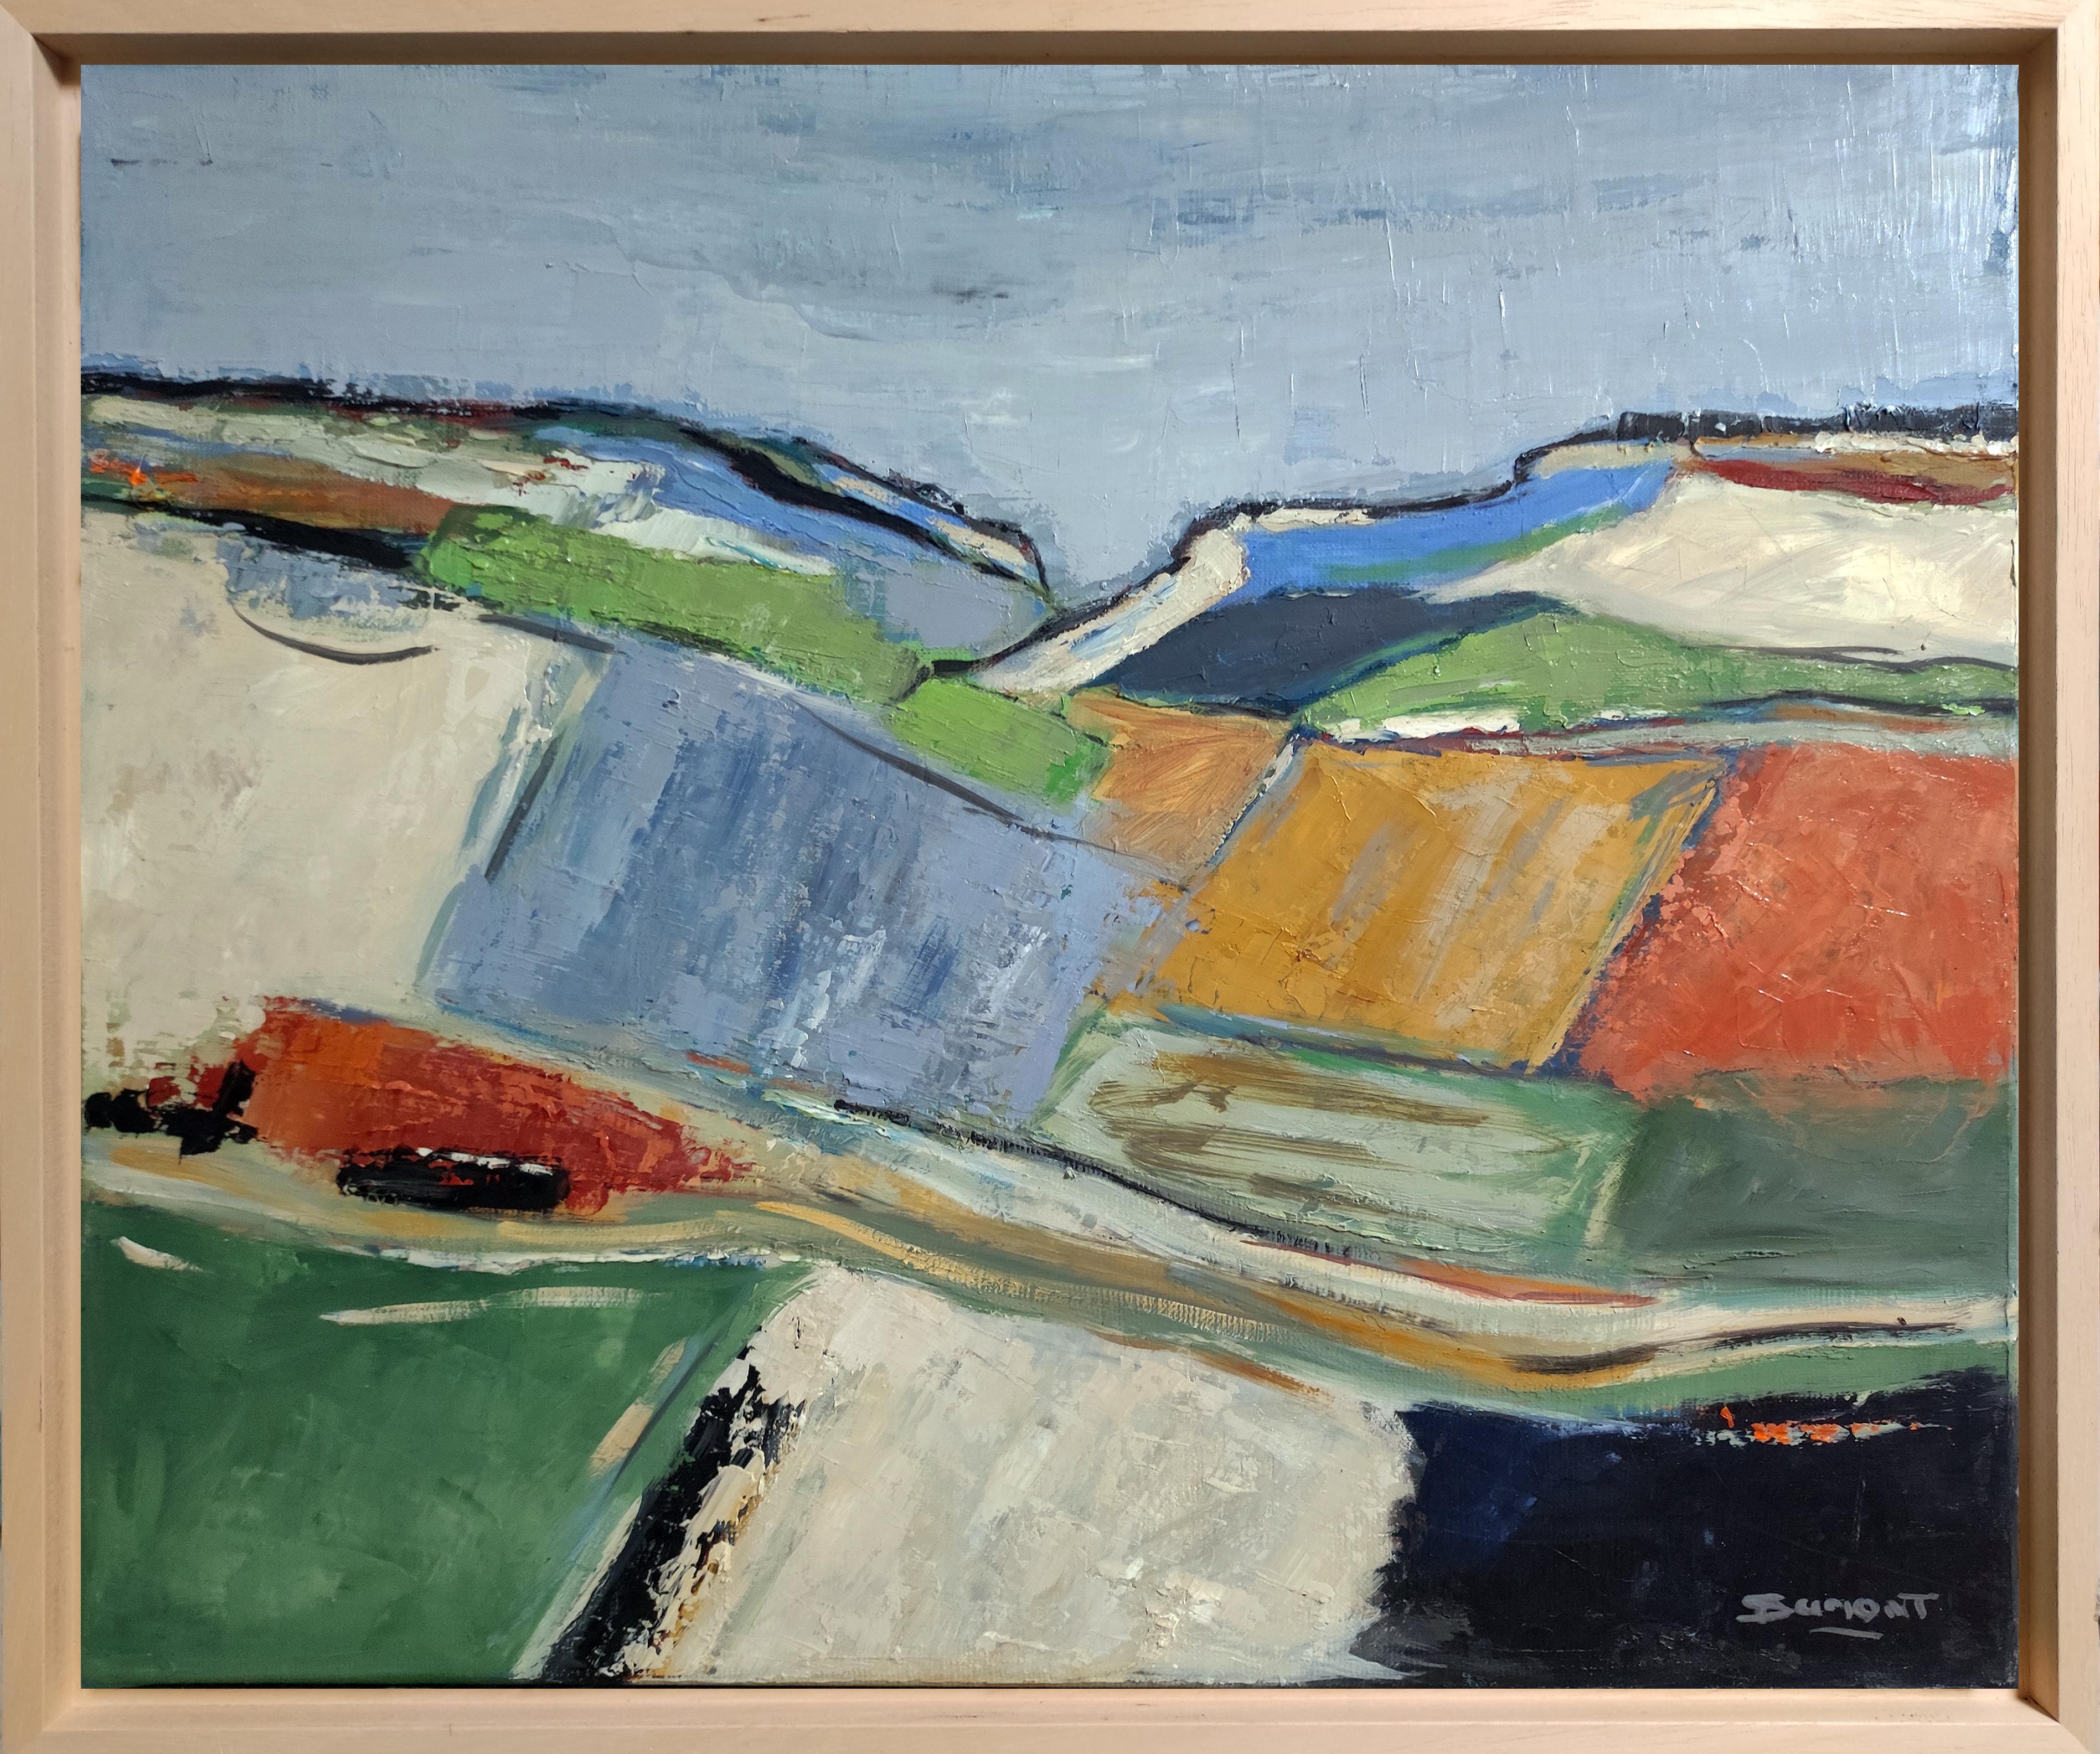 Abstract Painting SOPHIE DUMONT - Agros, paysage abstrait, texturé, France, contemporain, multicolore, huile